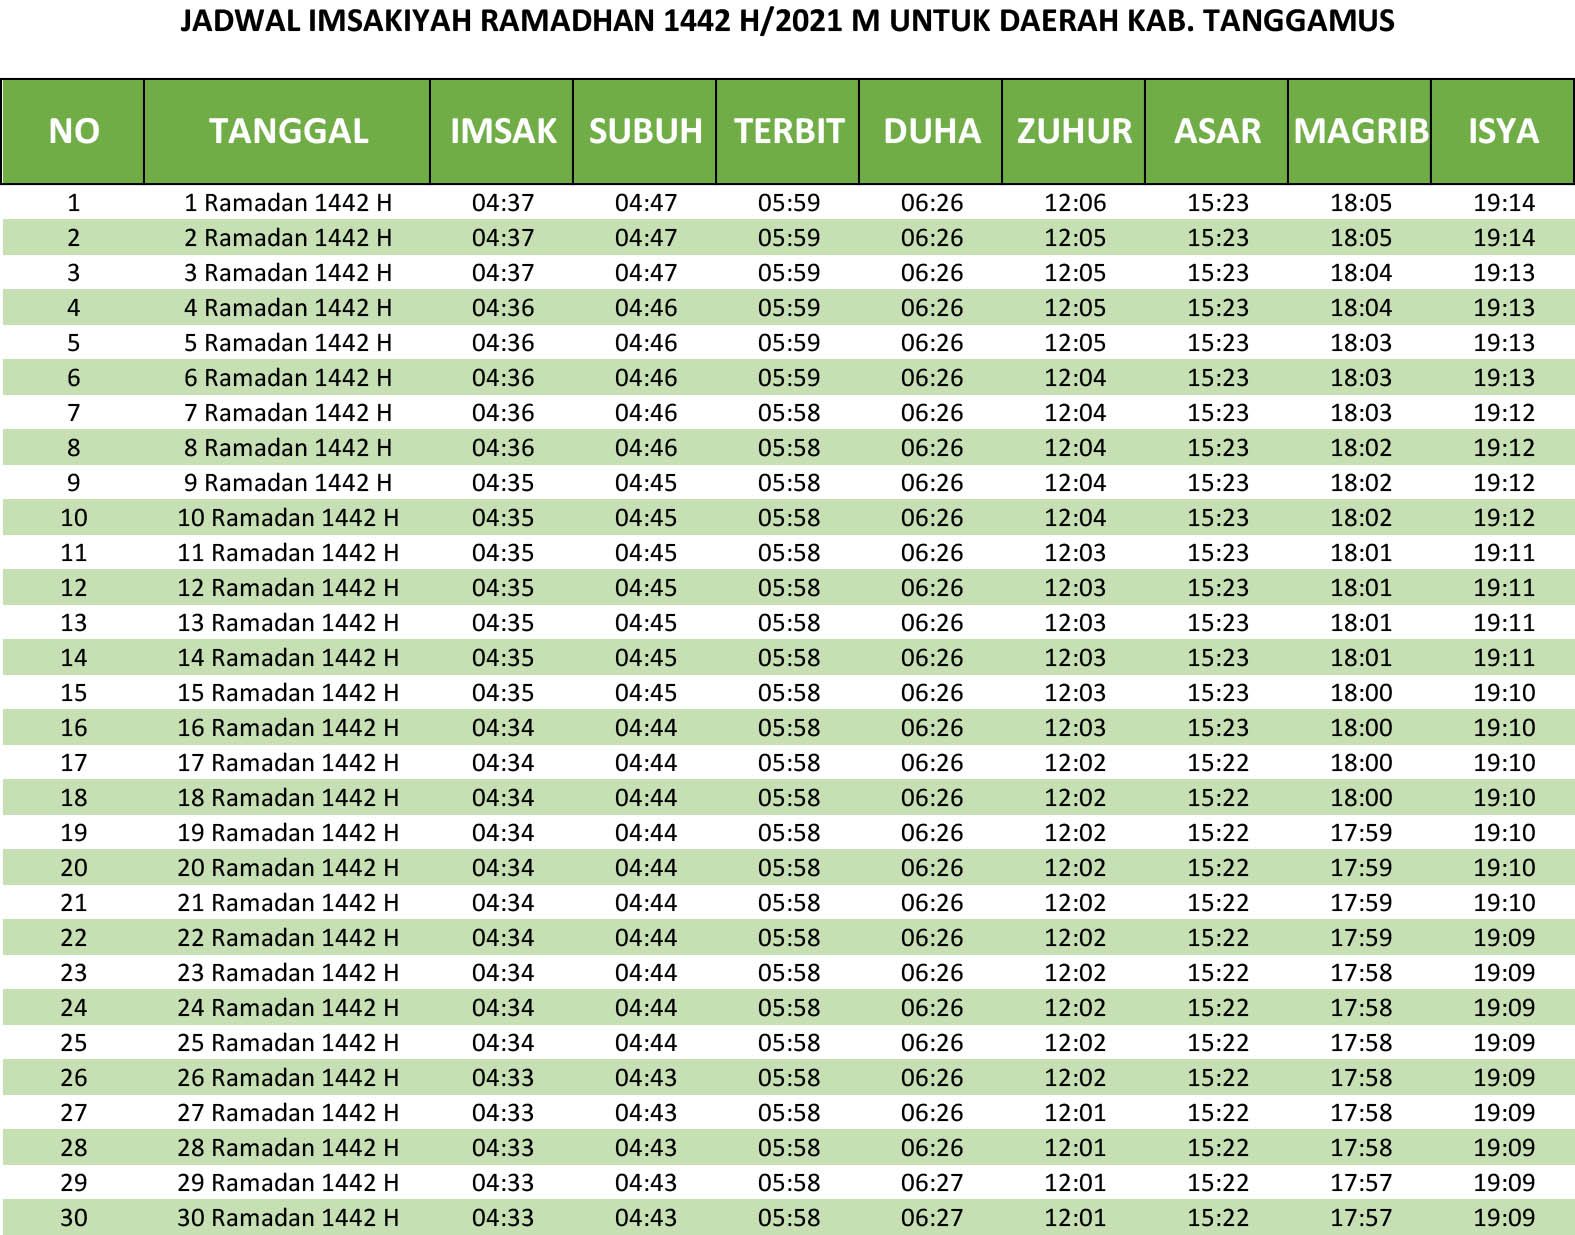 Jadwal imsakiyah Ramadhan 1442 H untuk daerah Tanggamus.